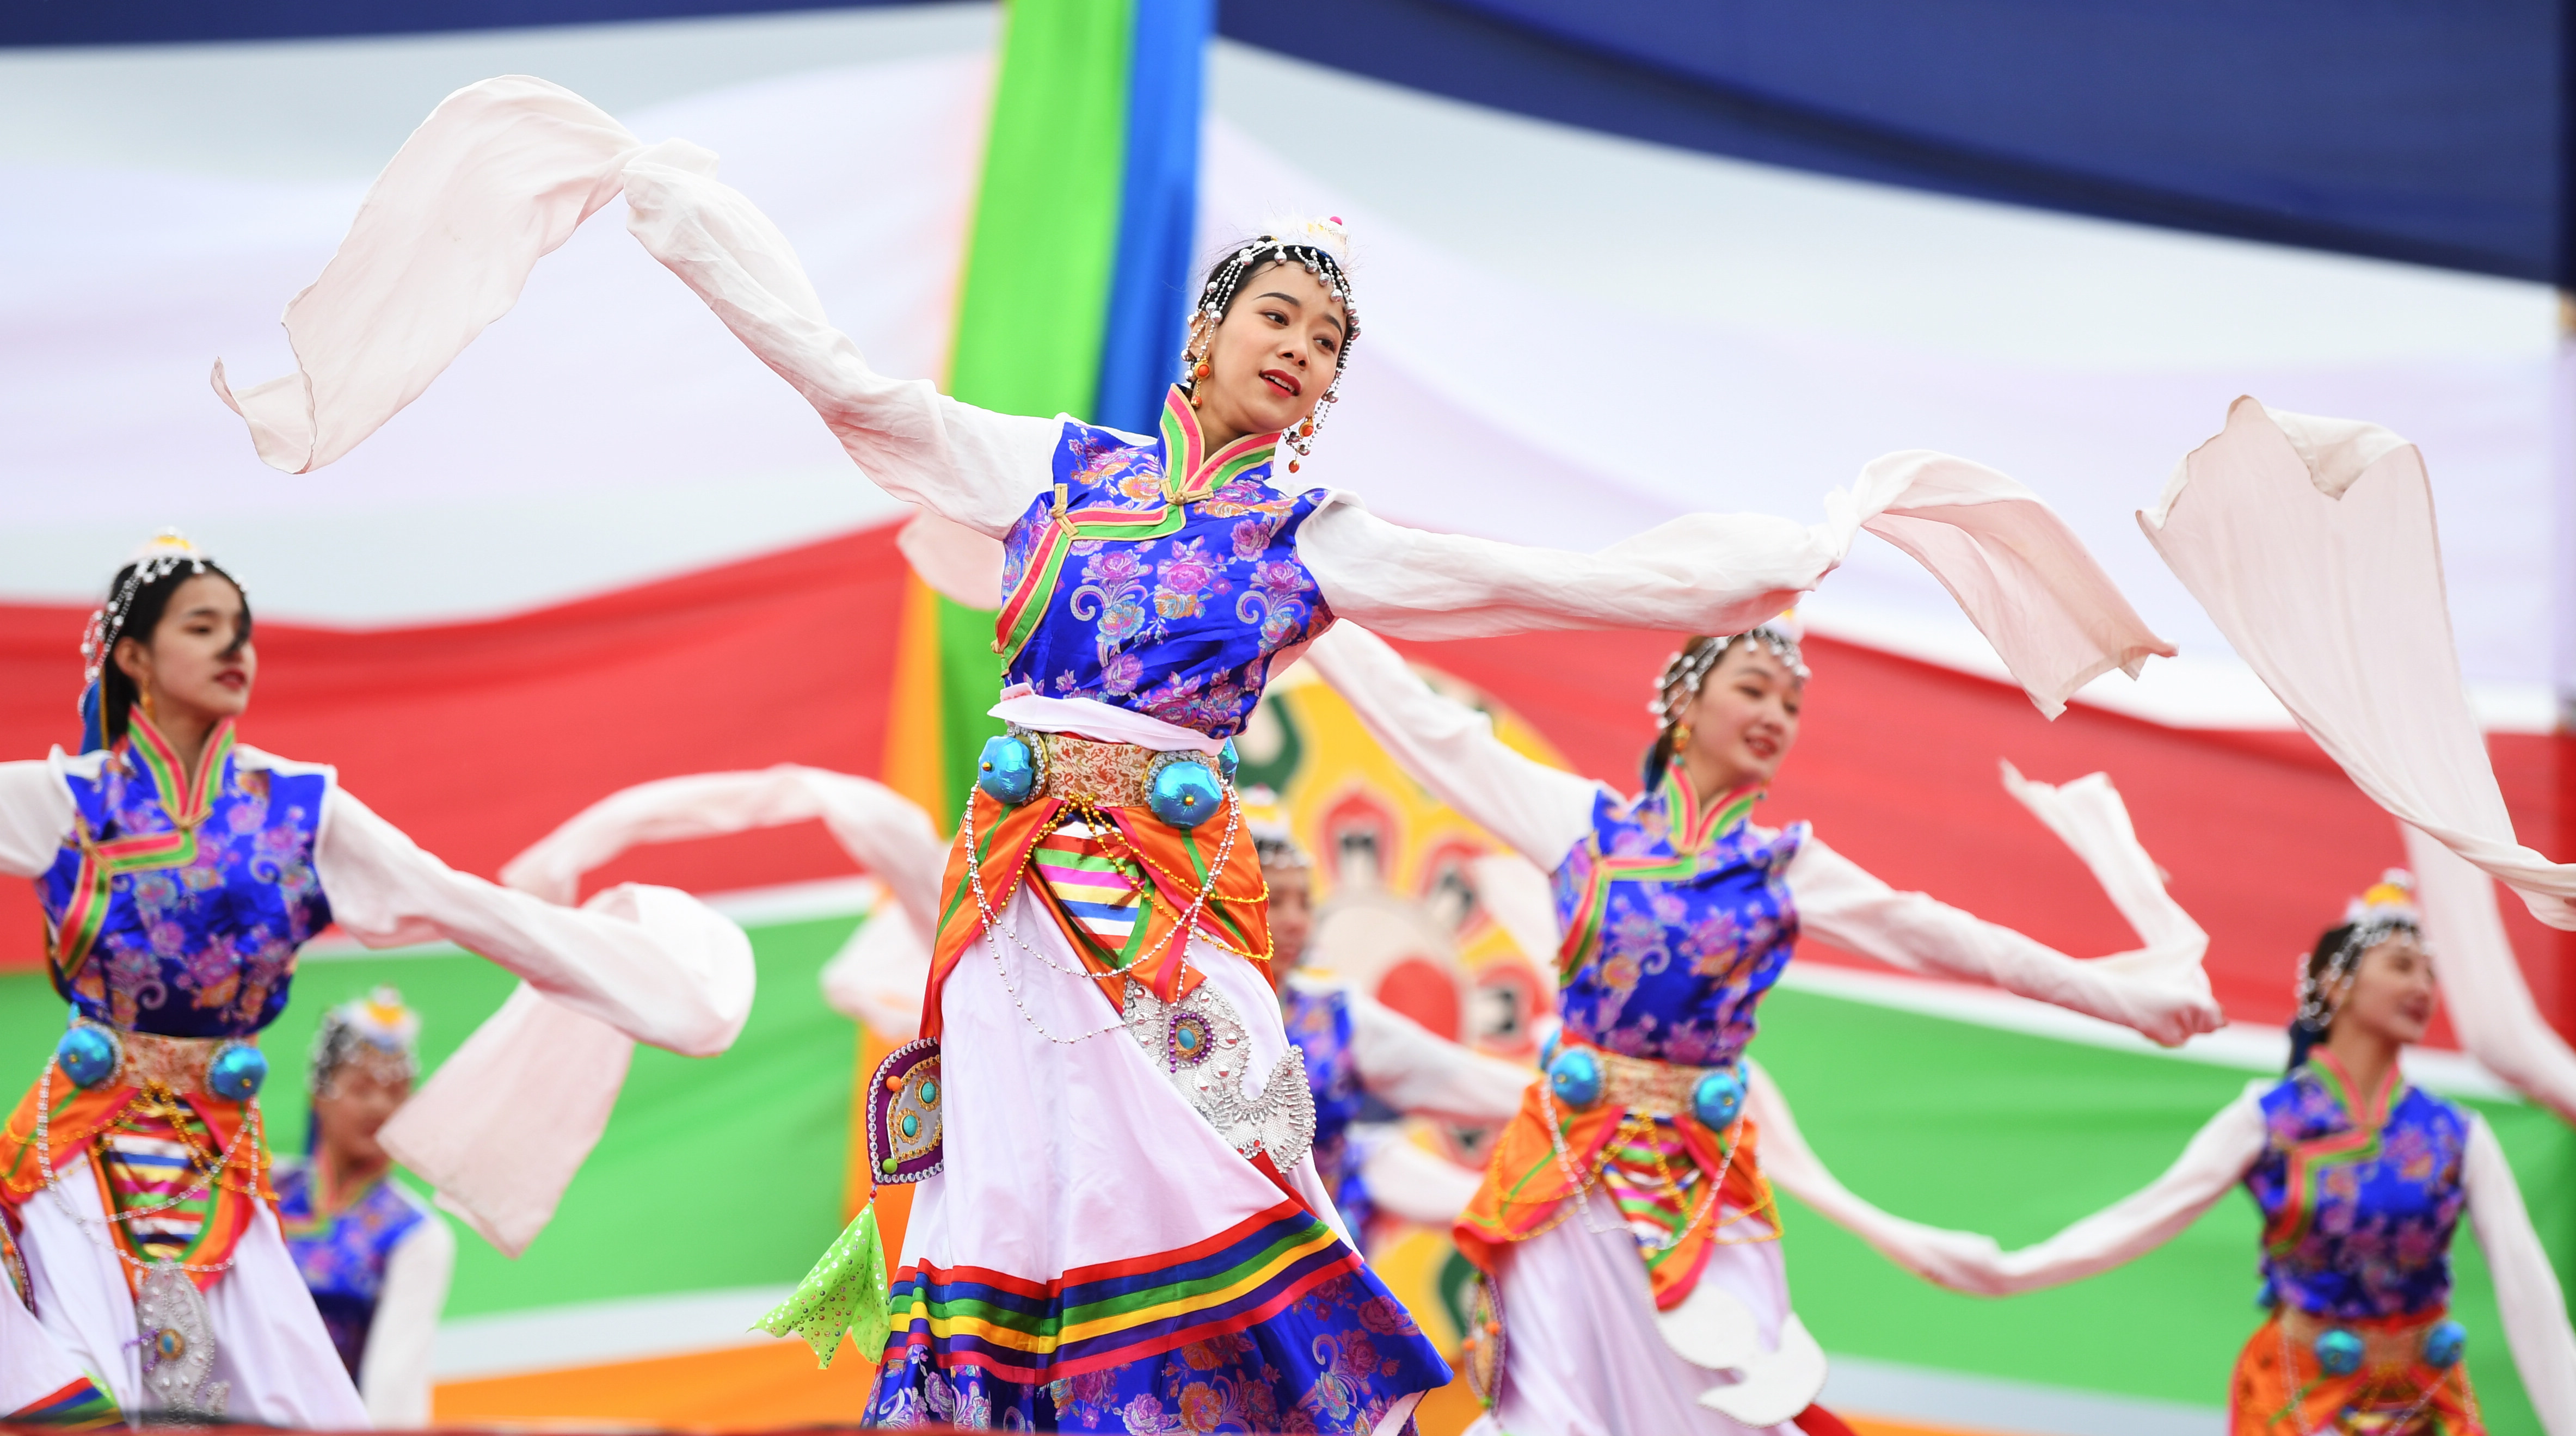 8月13日,演员在赛马节开幕式上表演舞蹈